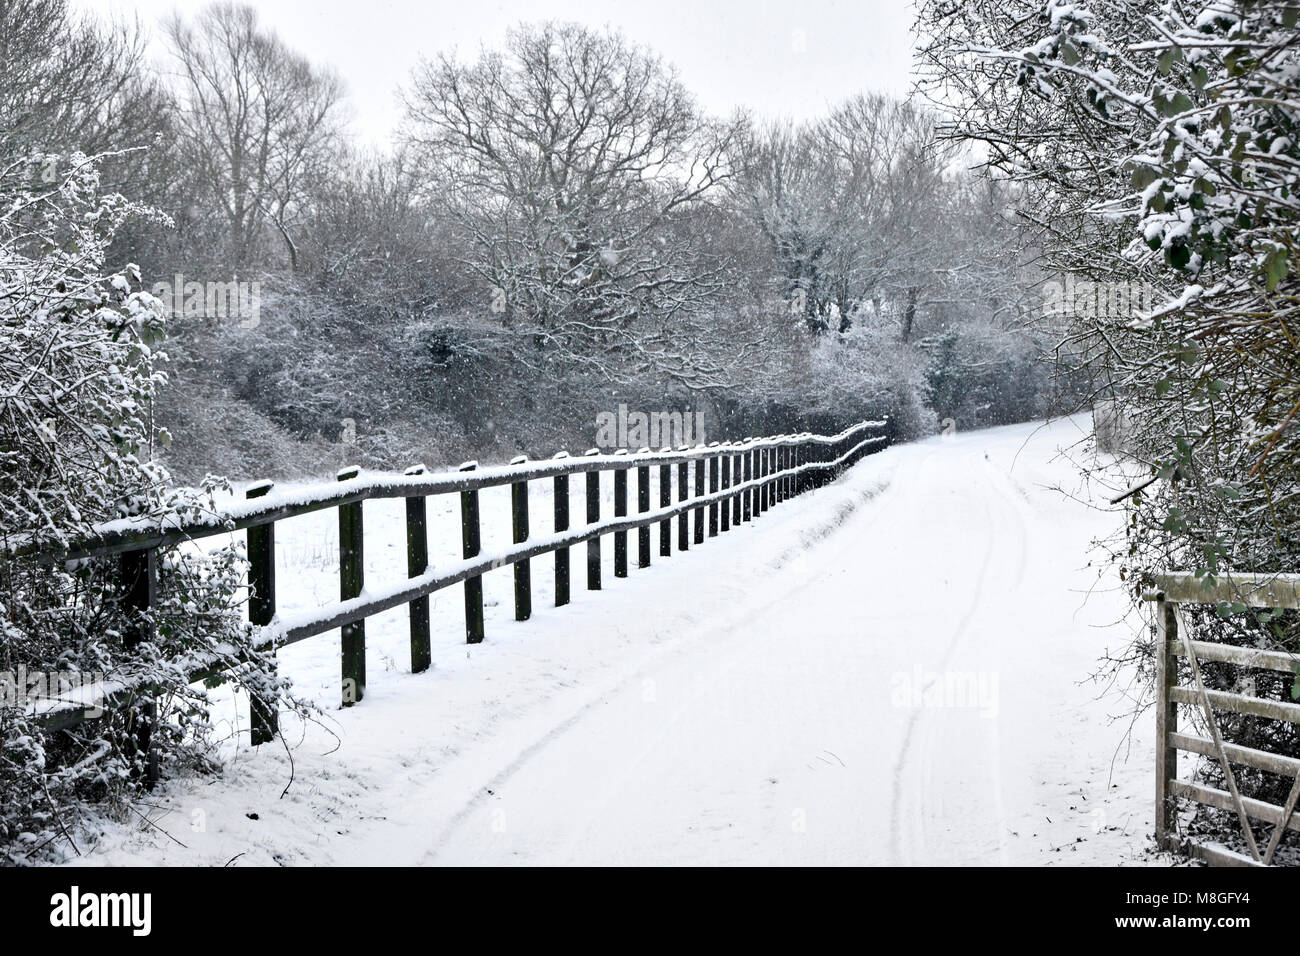 Scena di neve & recinzione di legno accanto a lungo coperto di neve viale privato nel bosco innevato paesaggio nevoso inverno alberi campagna Essex England Regno Unito Foto Stock